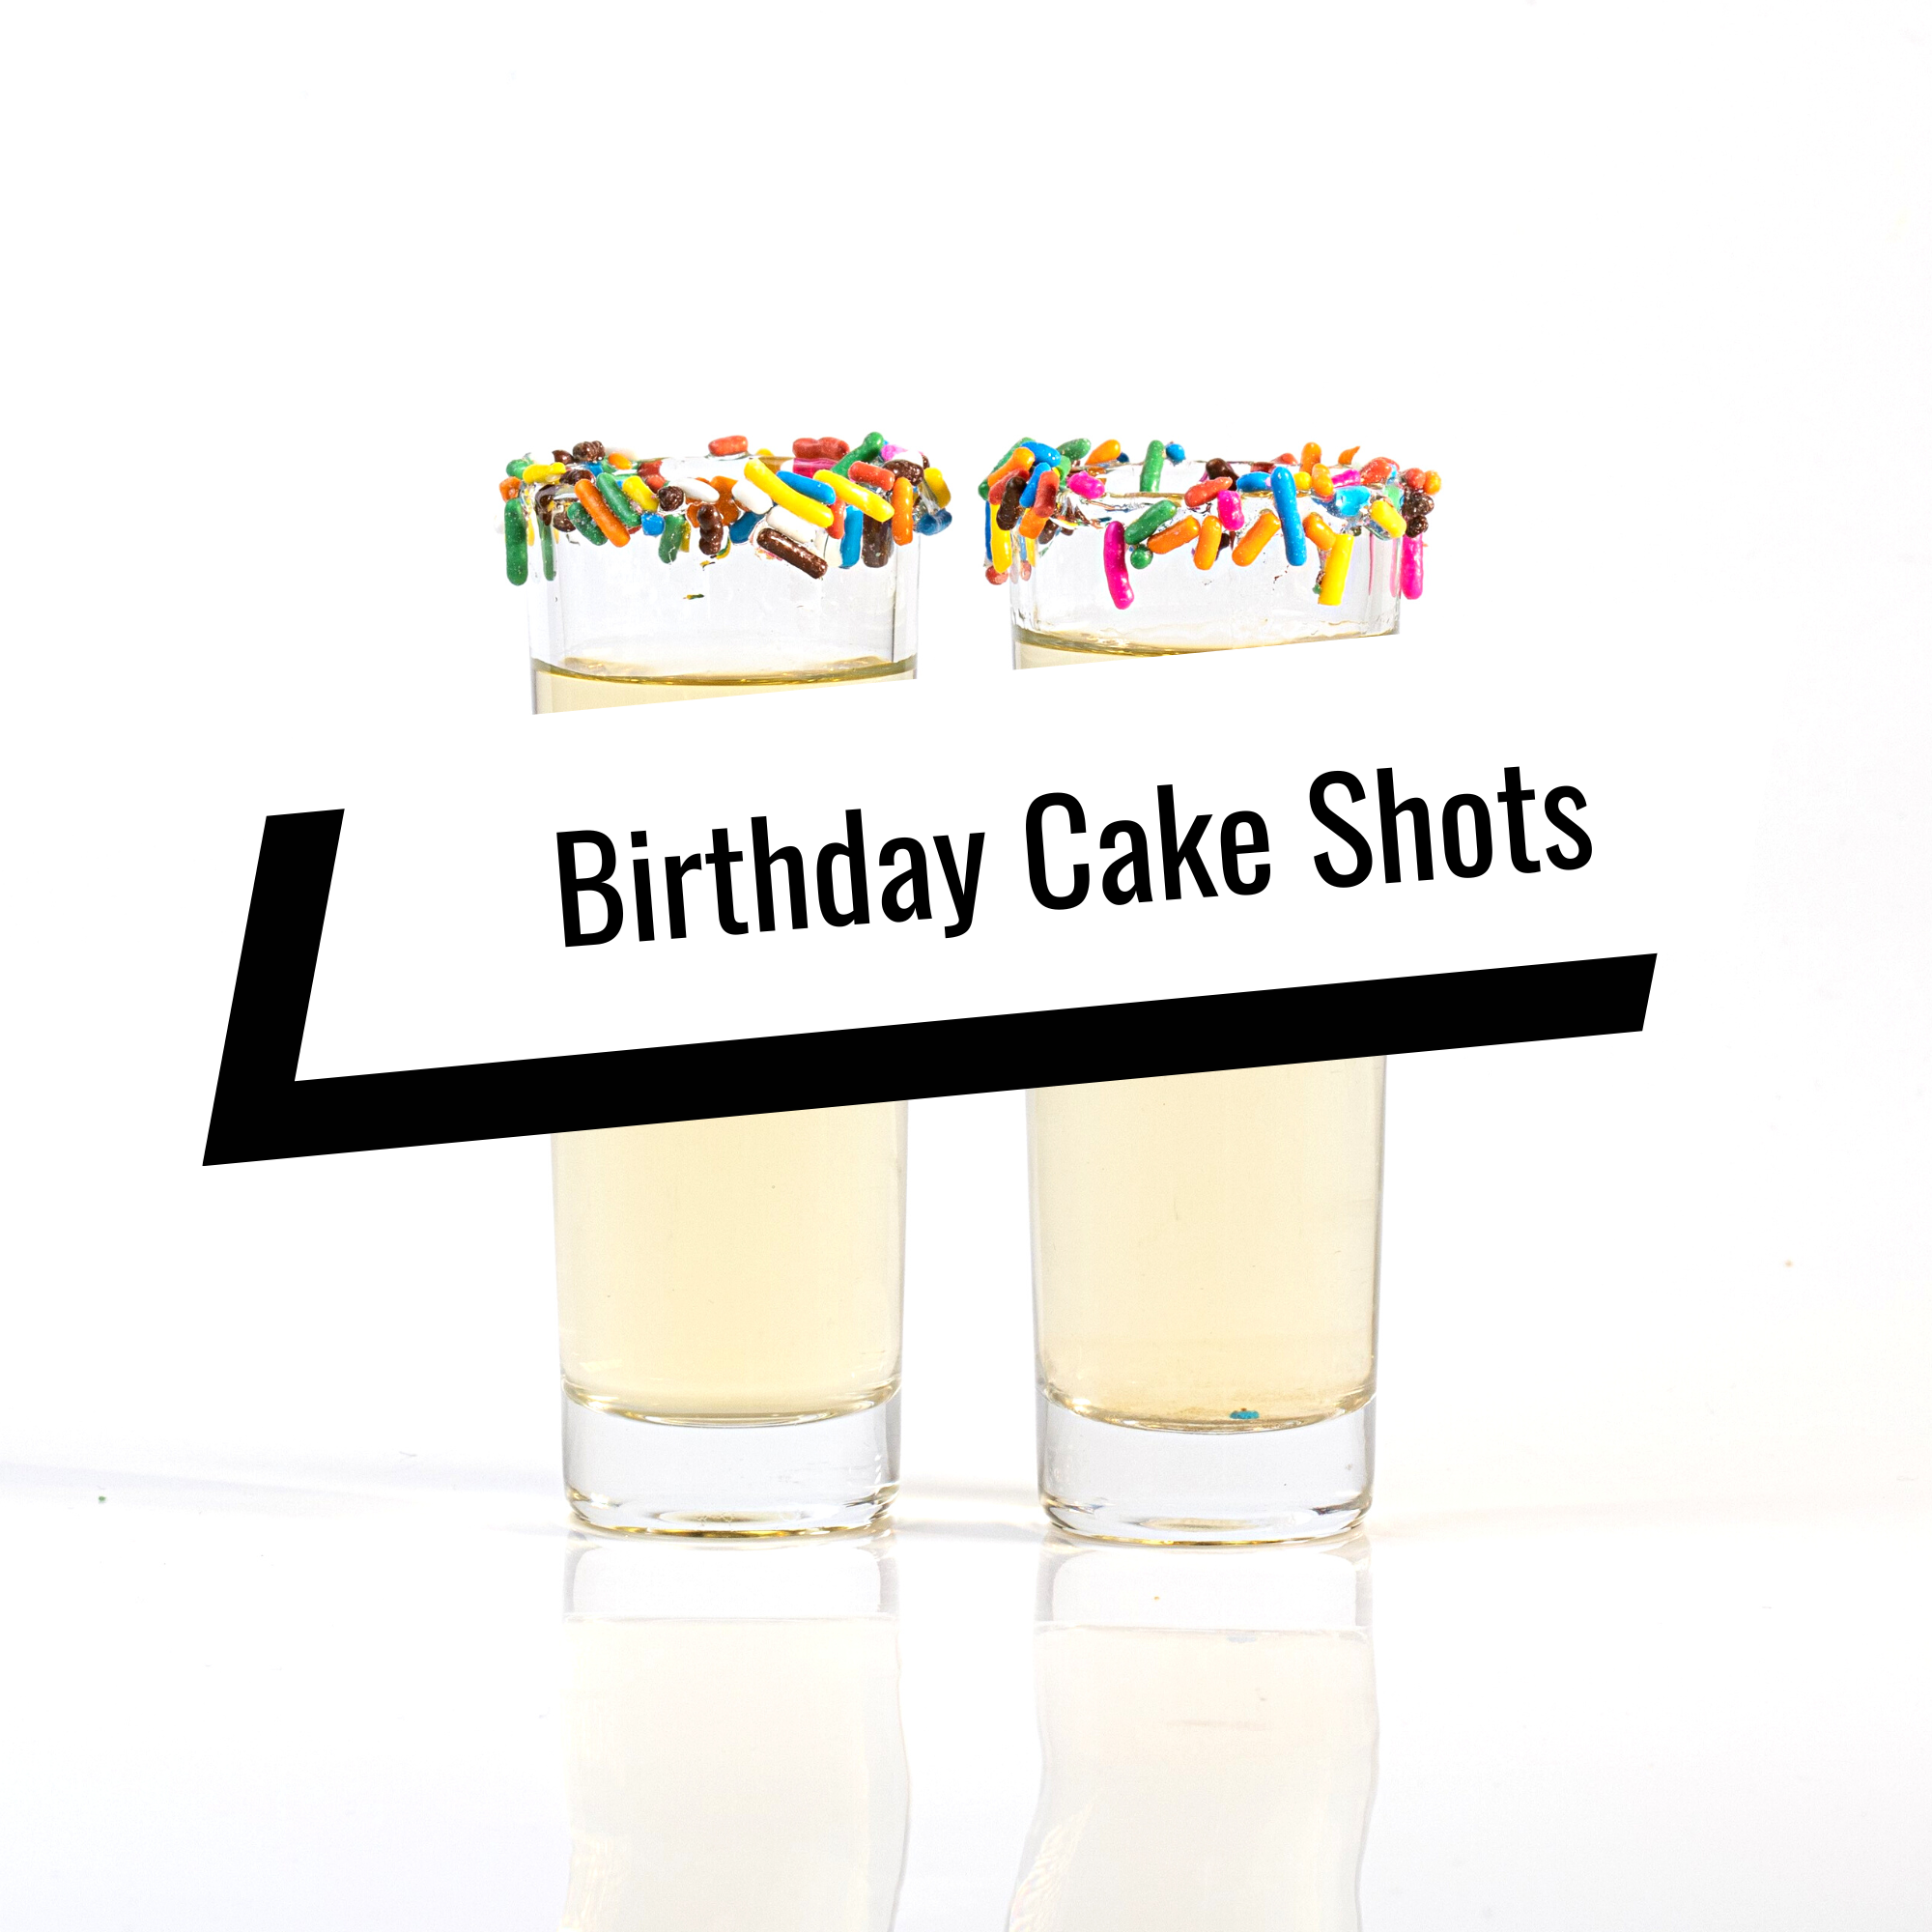 Birthday cake shot recipe